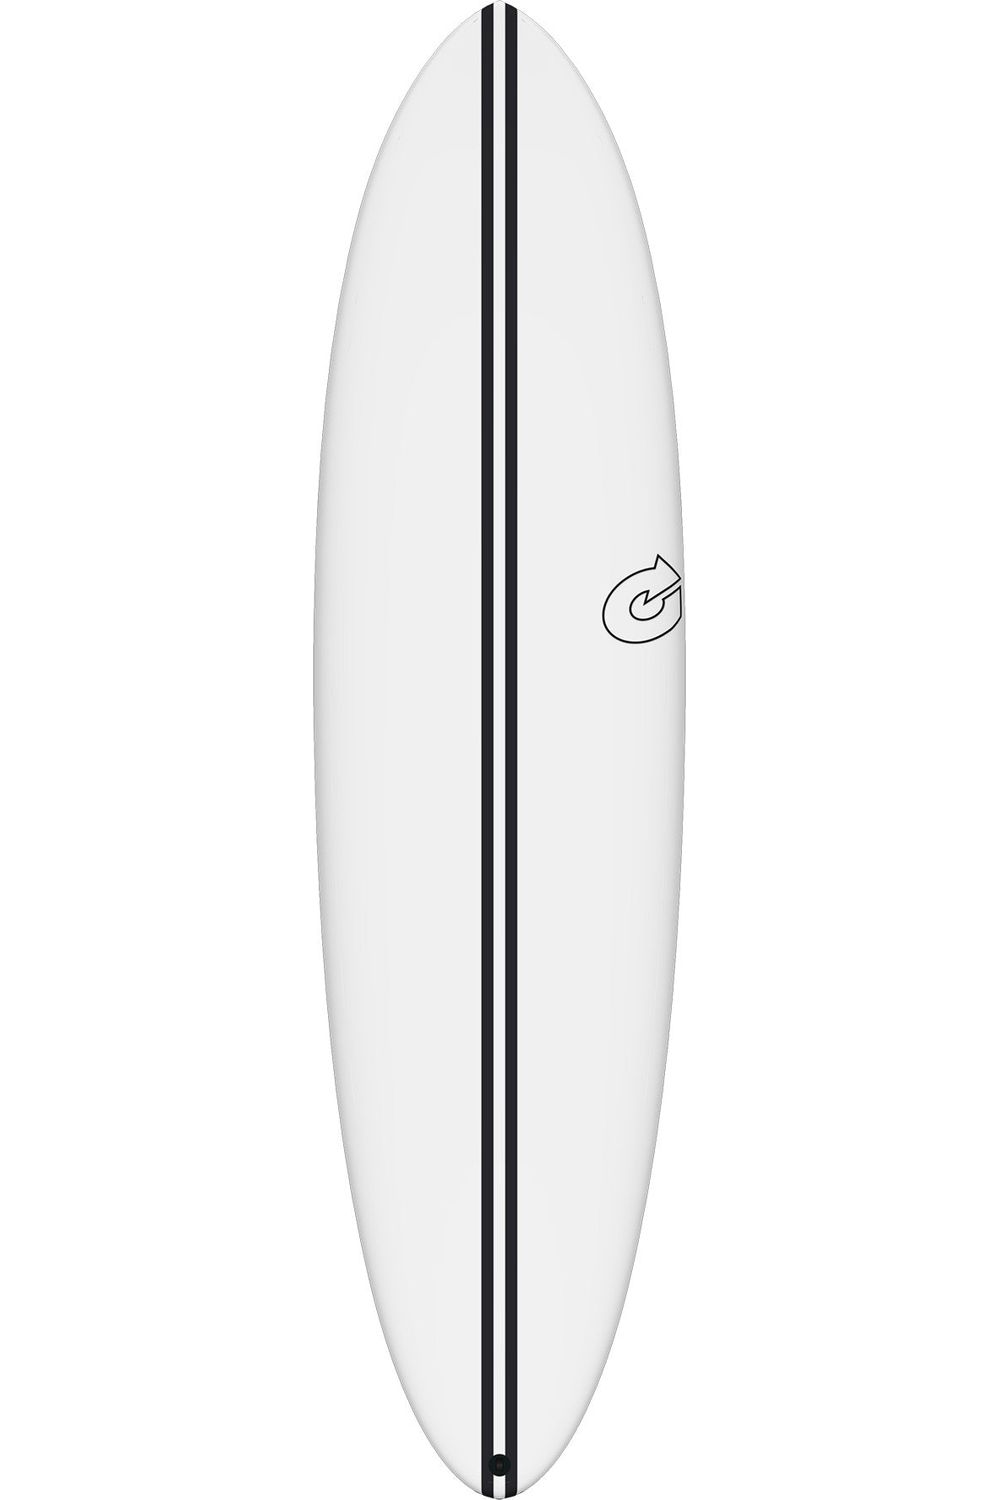 Torq TEC Chopper Surfboard In White (Gen 2)